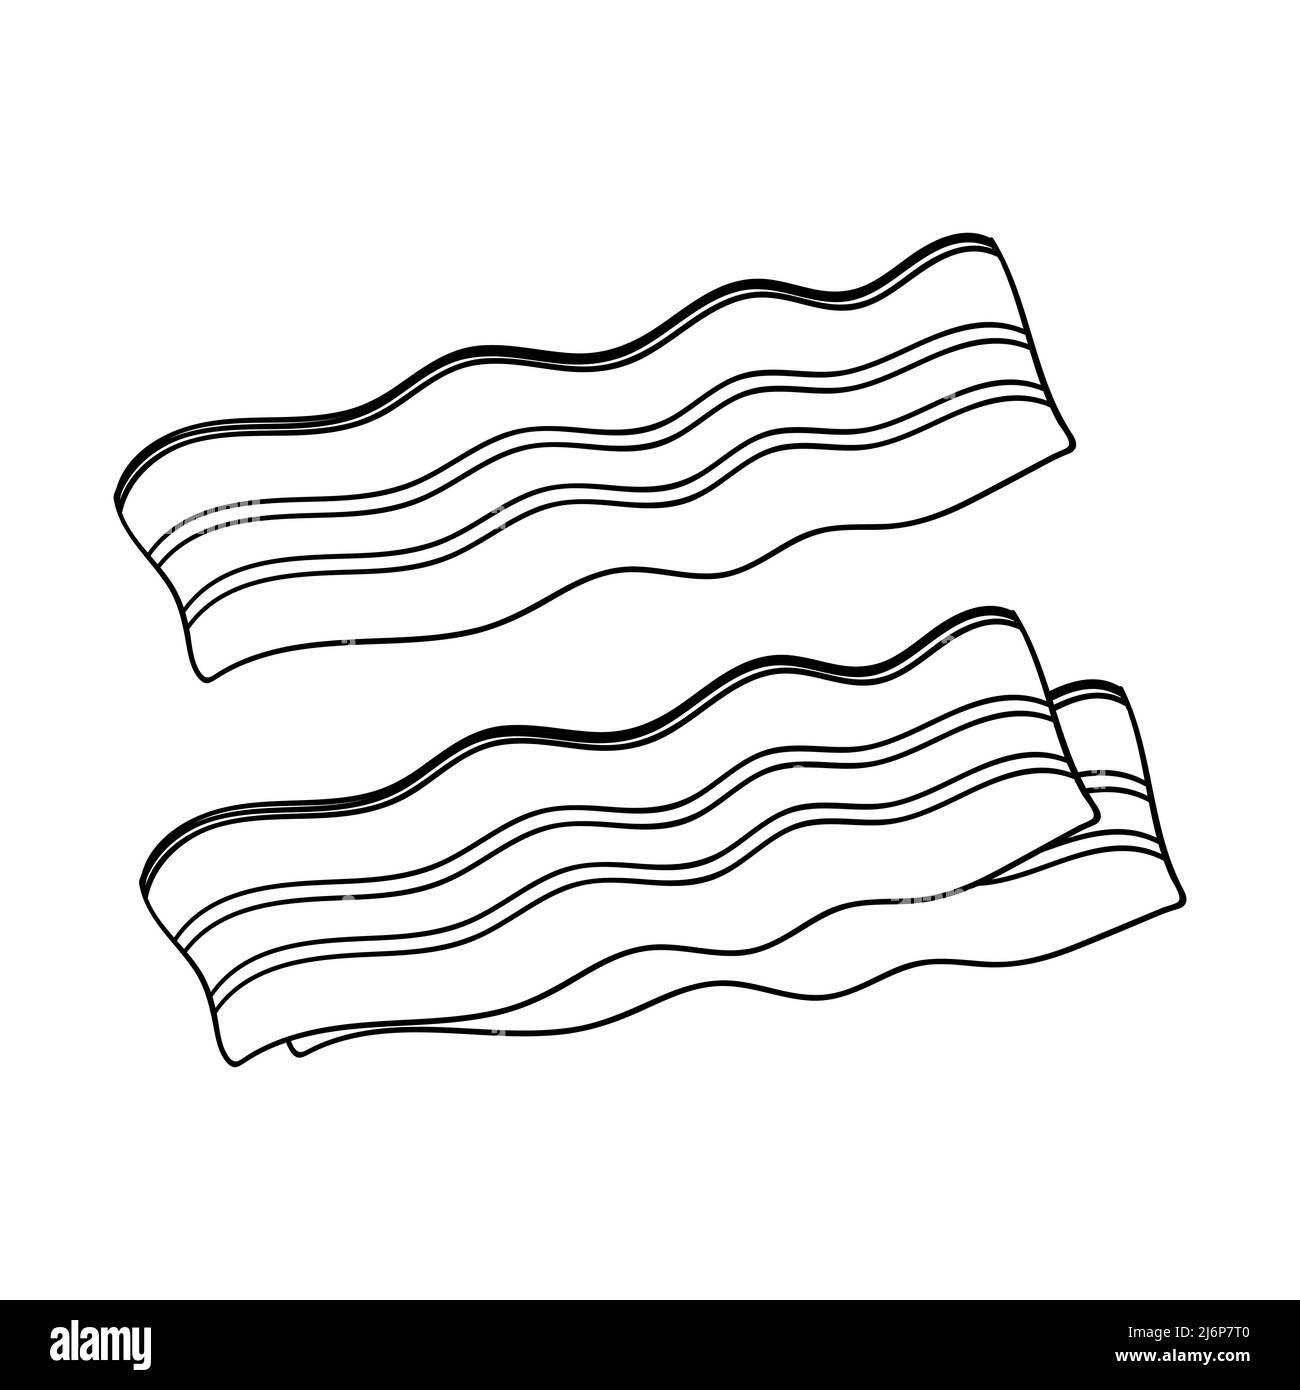 Tranches de bacon. Dessin de contour de l'illustration alimentaire en forme de doodle, dessiné à la main, isolé sur un fond blanc. Vecteur noir et blanc Illustration de Vecteur